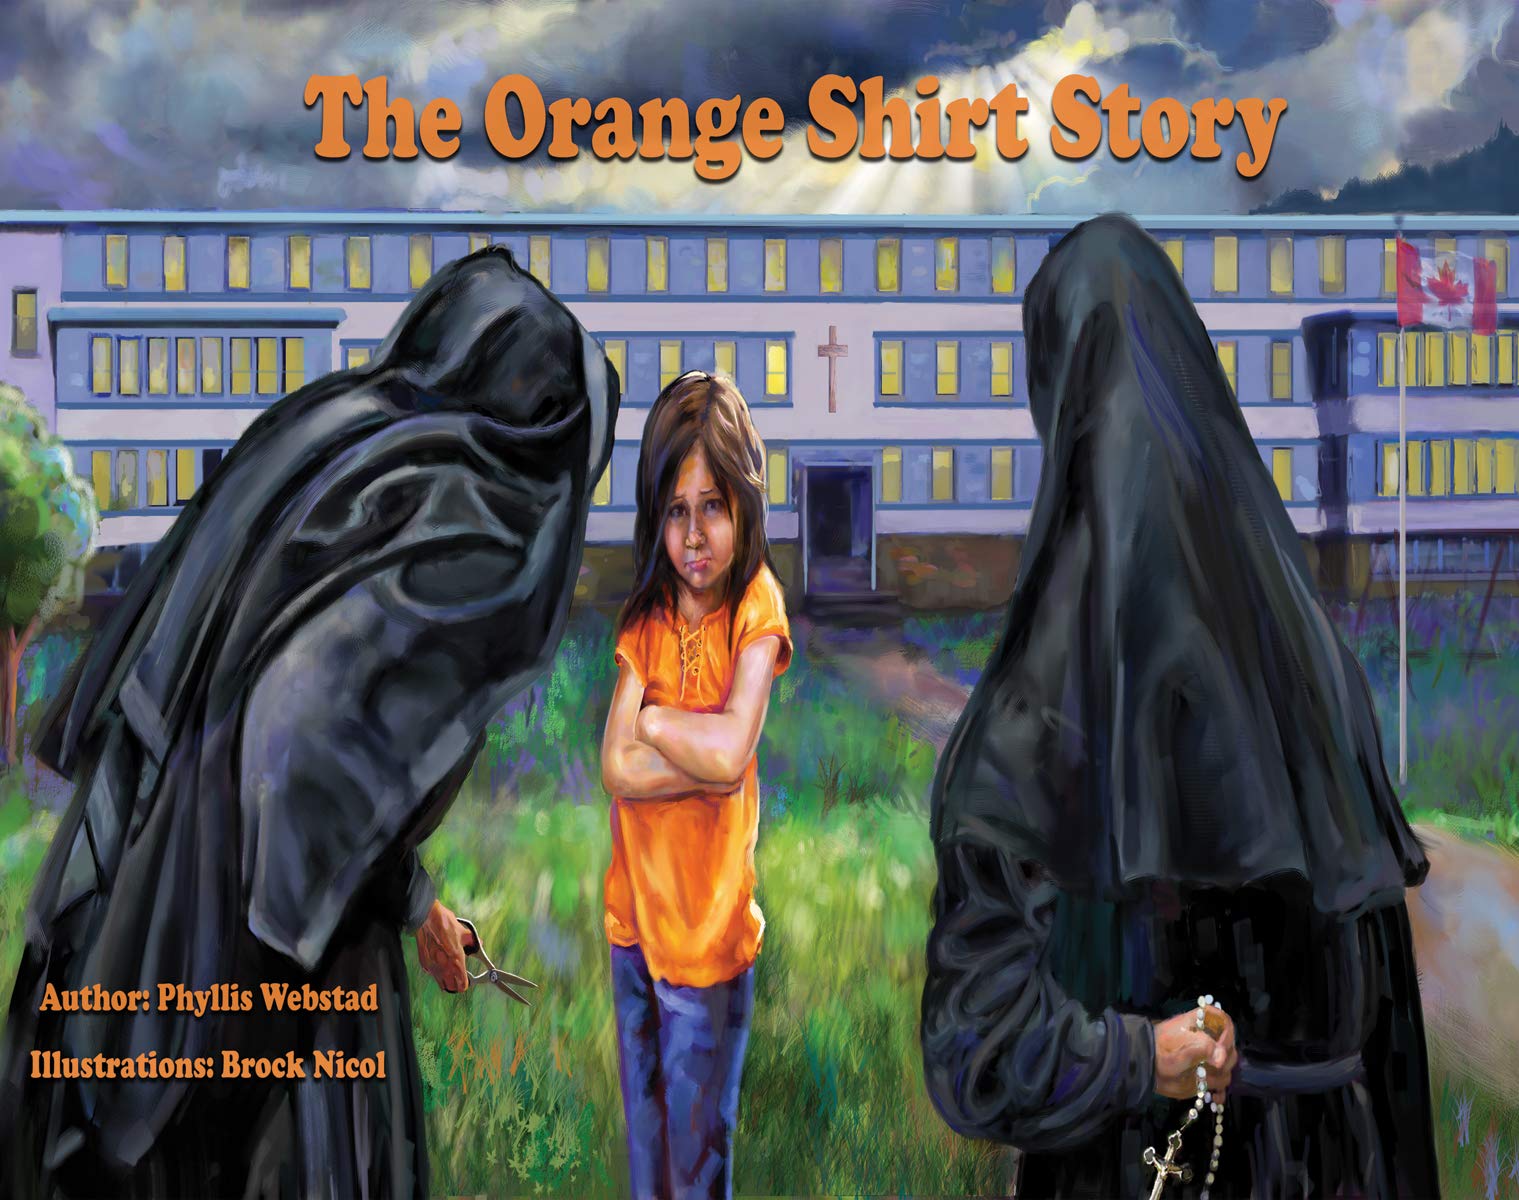 Image The orange shirt story